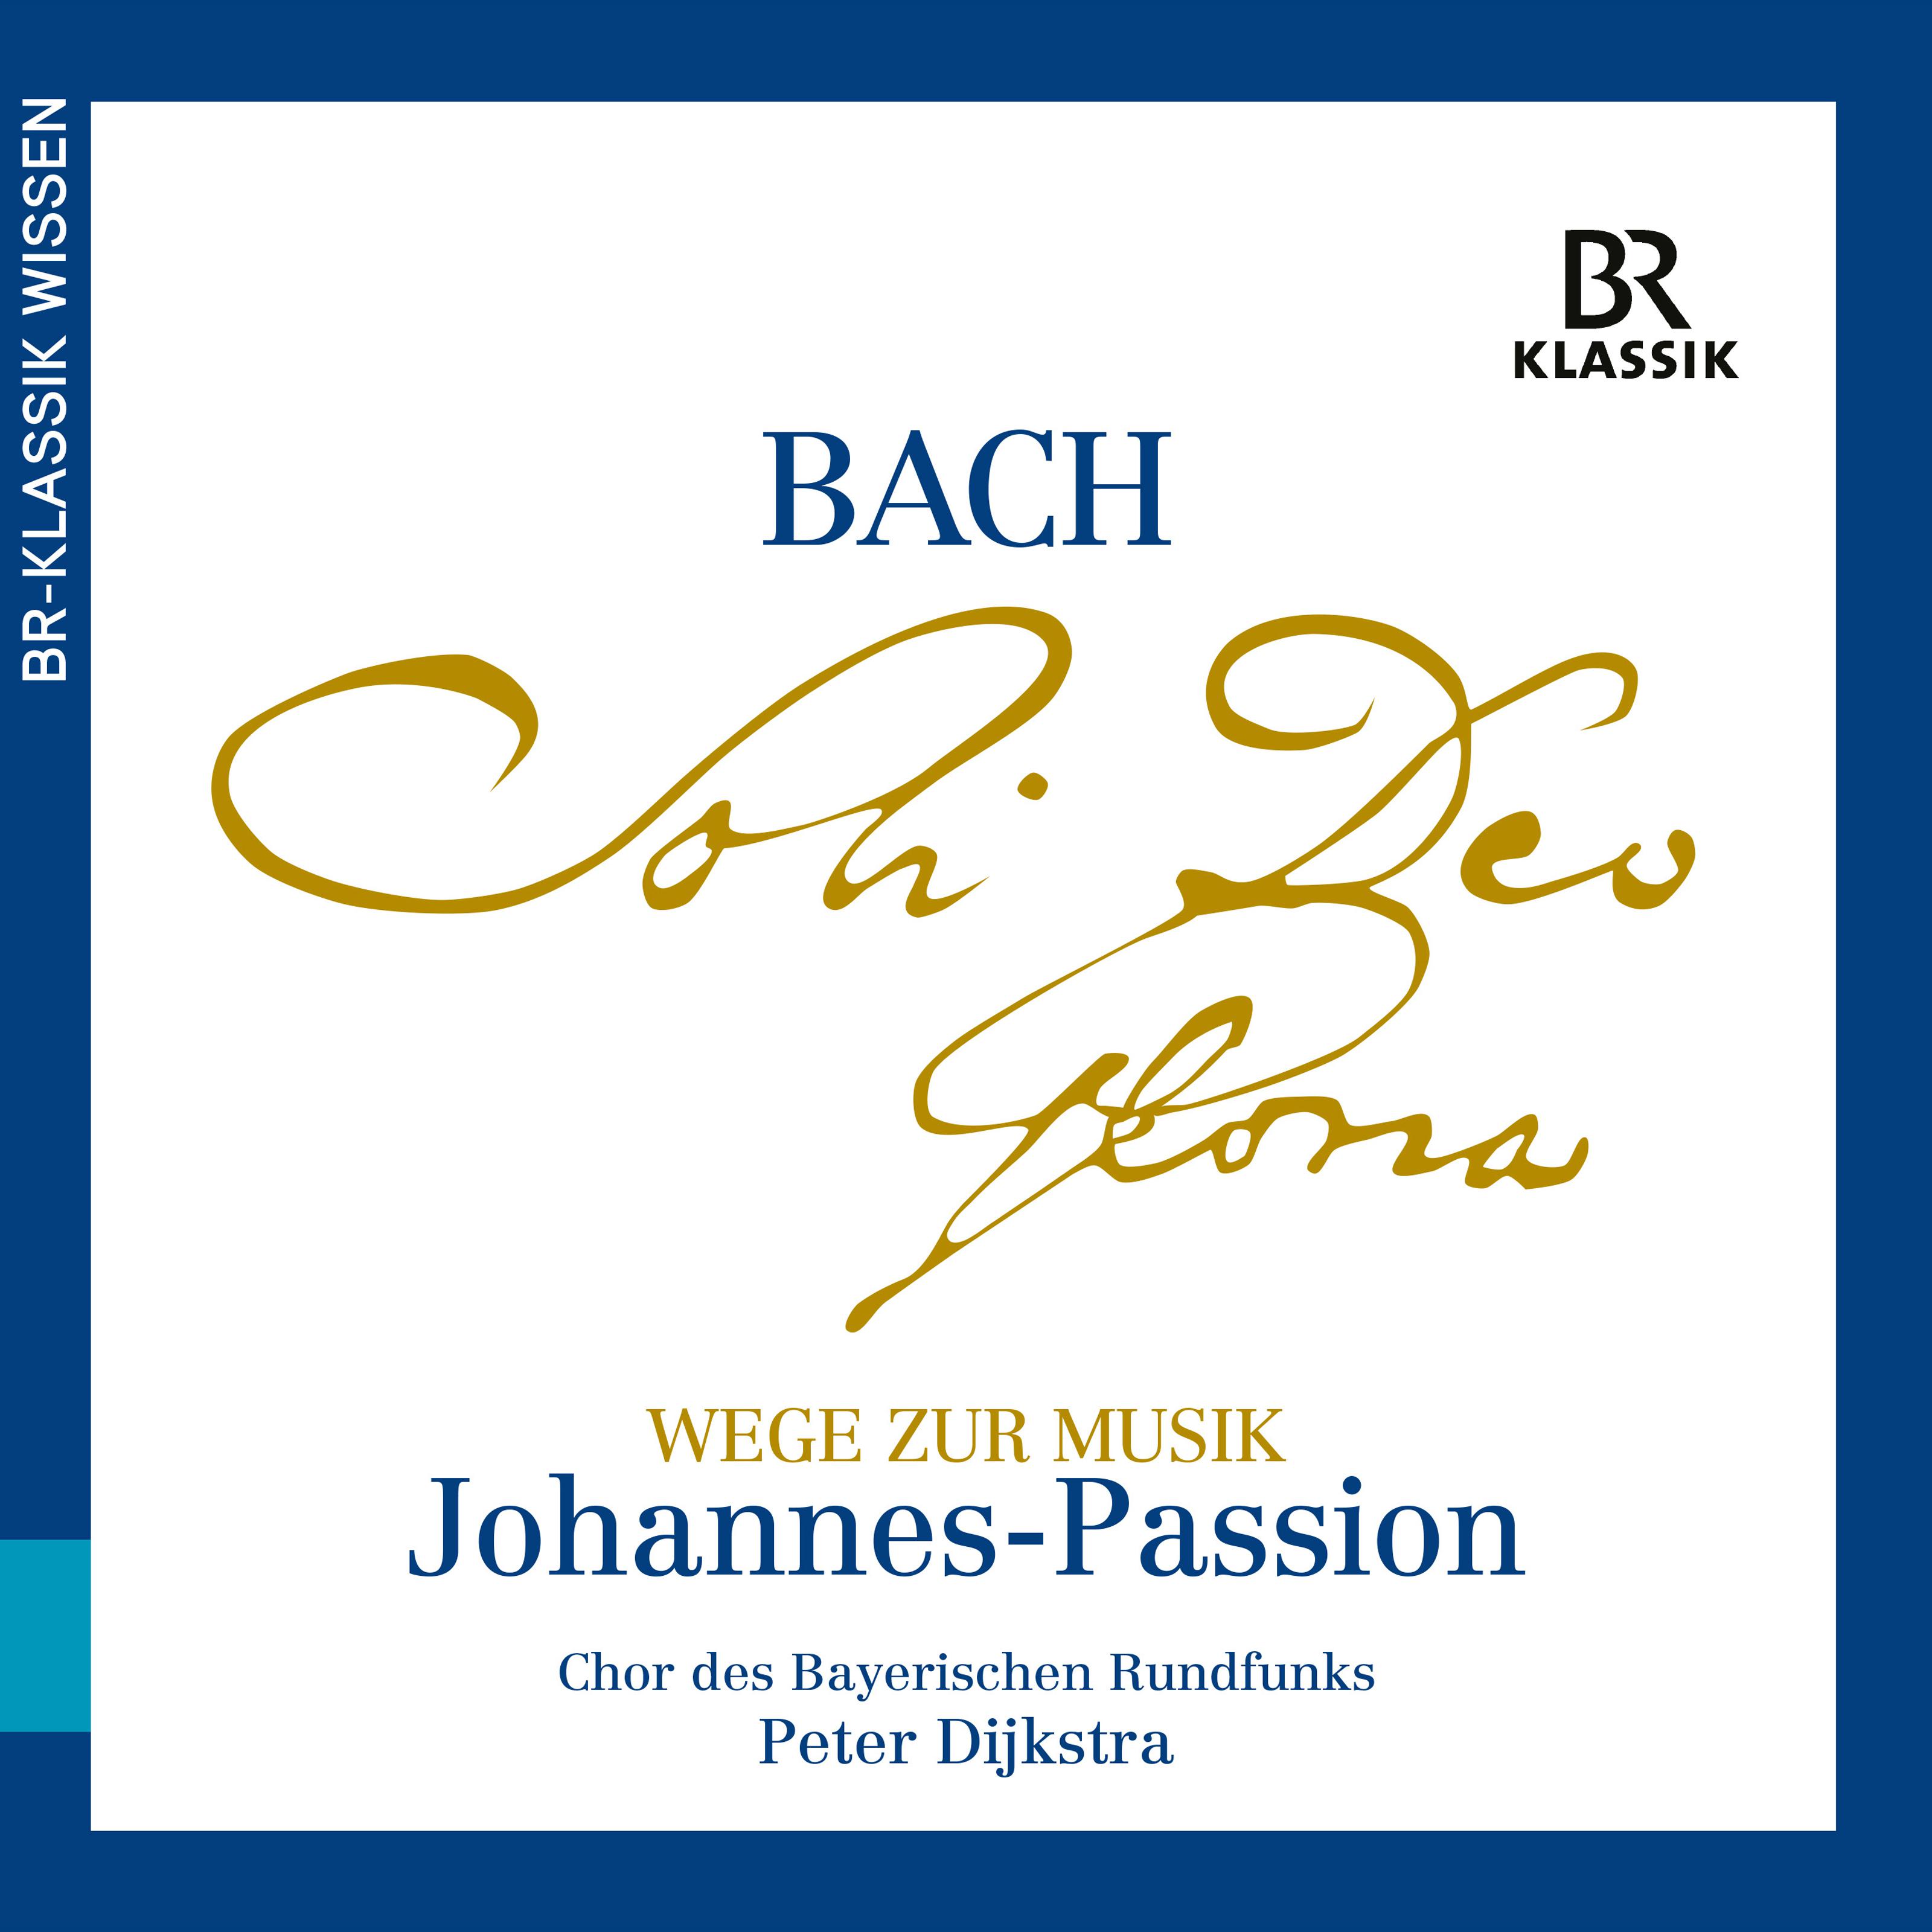 Christian Baumann - Wege zur Musik aus der Johannes-Passion, Teil 2 